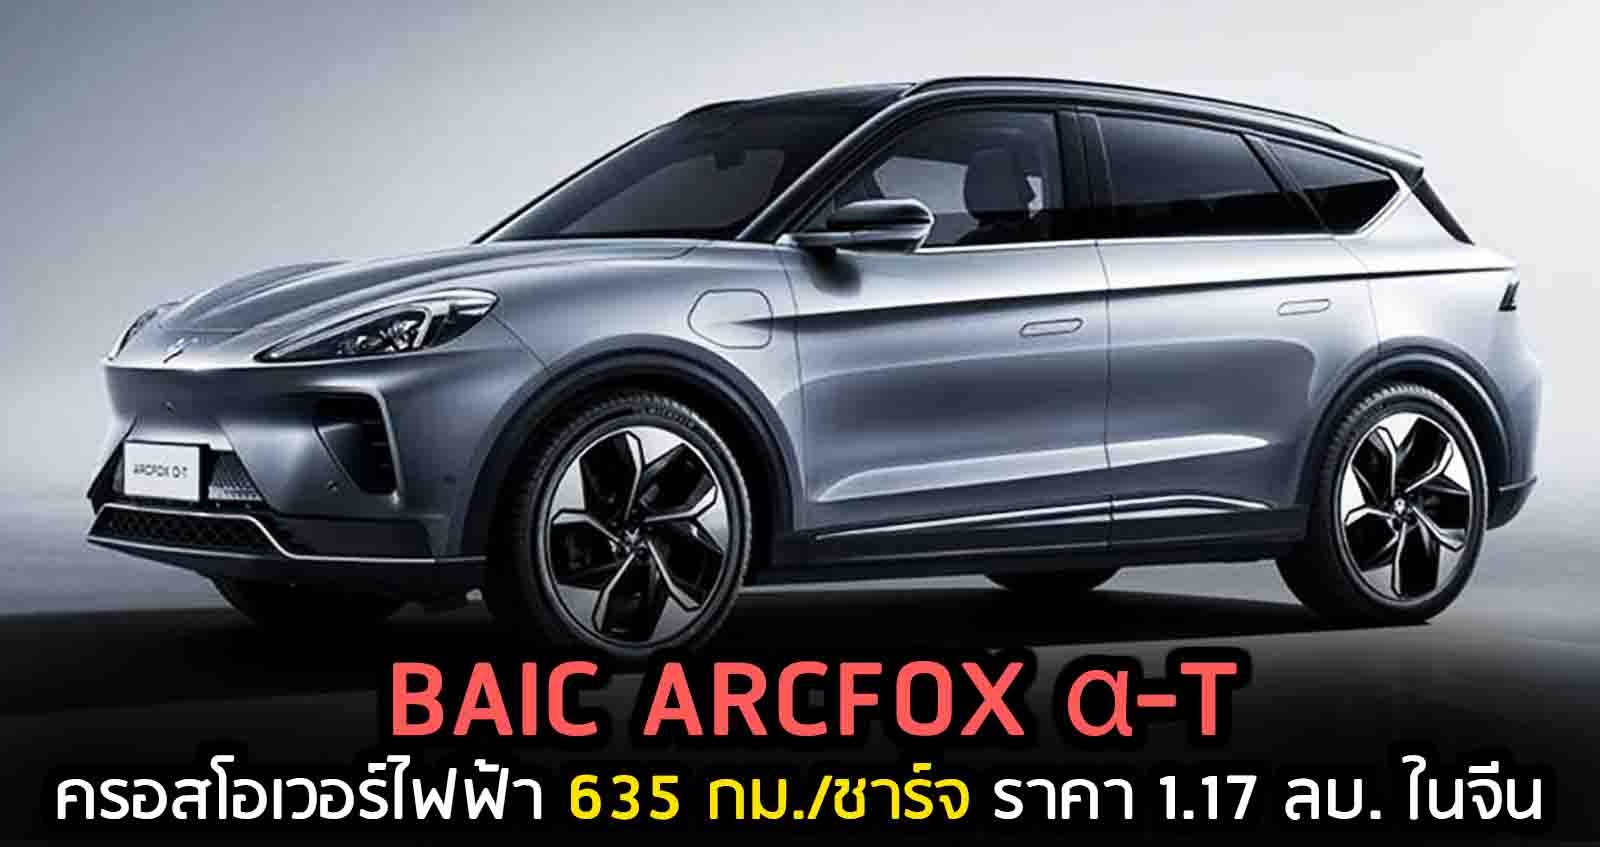 BAIC ARCFOX α-T ครอสโอเวอร์ไฟฟ้า 635 กม./ชาร์จ ราคา 1.17 ลบ. ในจีน